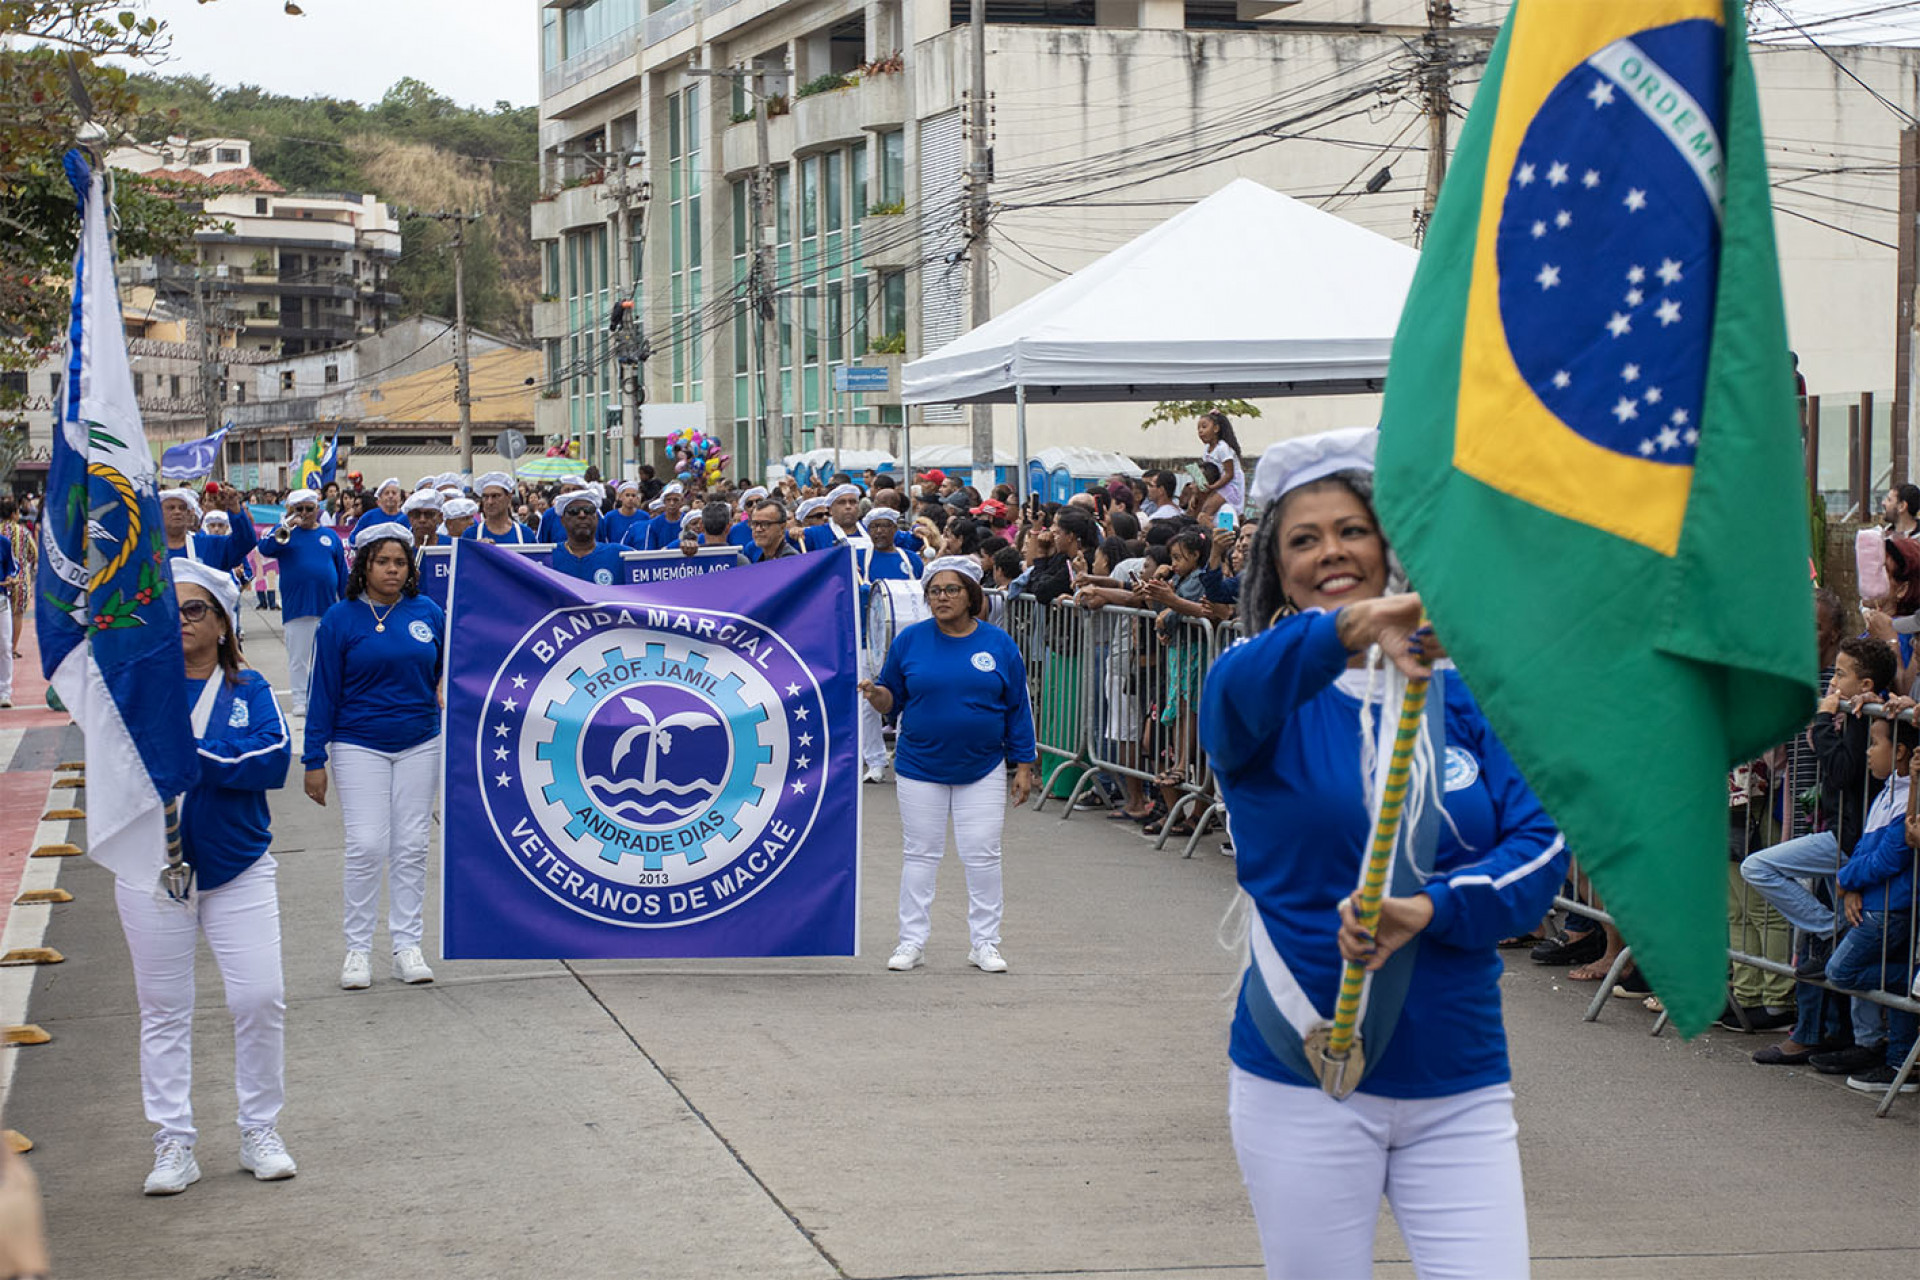 Desfile cívico de 210 anos de Macaé, com o tema da paz, demonstrou a união da comunidade em busca de um futuro melhor - Foto: Moisés Bruno H. Santos